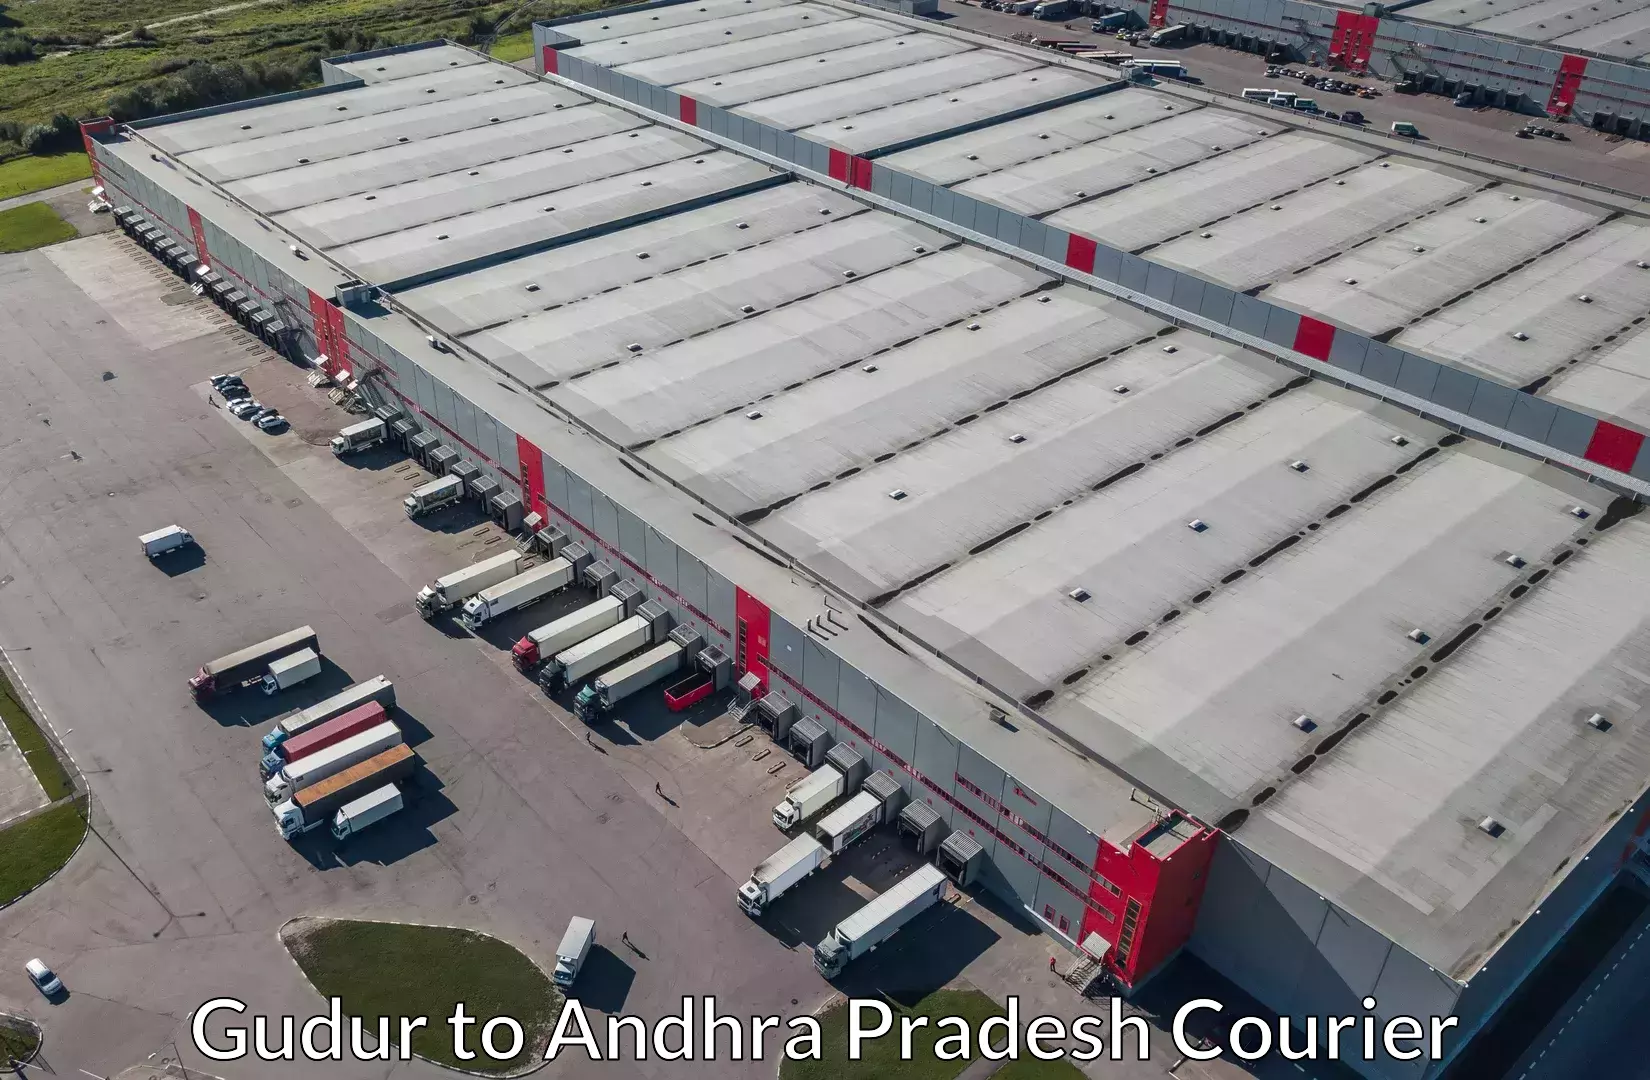 Furniture moving experts Gudur to Andhra Pradesh